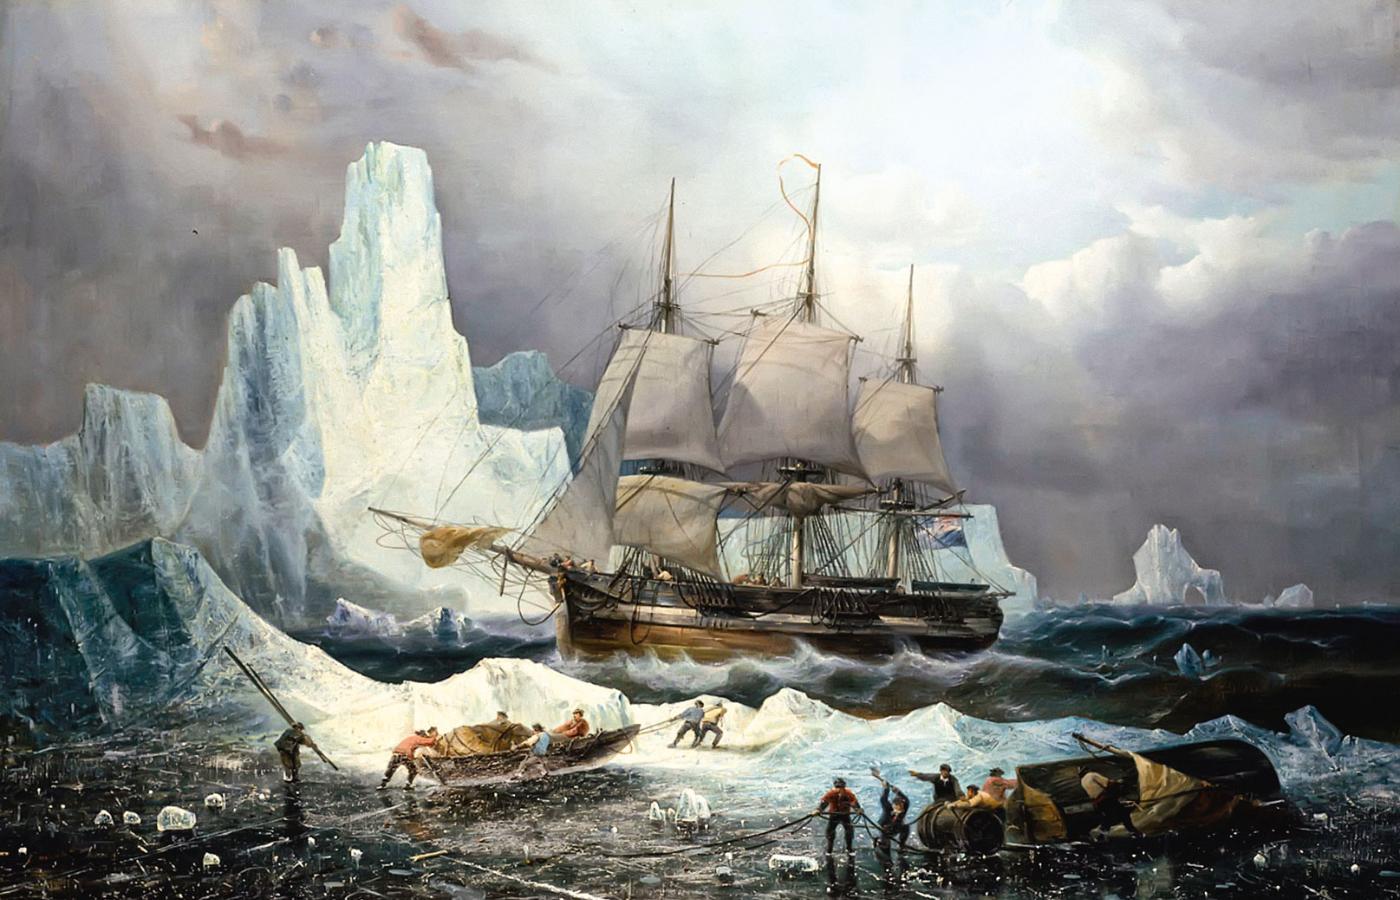 Statek „Erebus” w lodowej pułapce; obraz François-Etienne’a Musina, 1846 r.